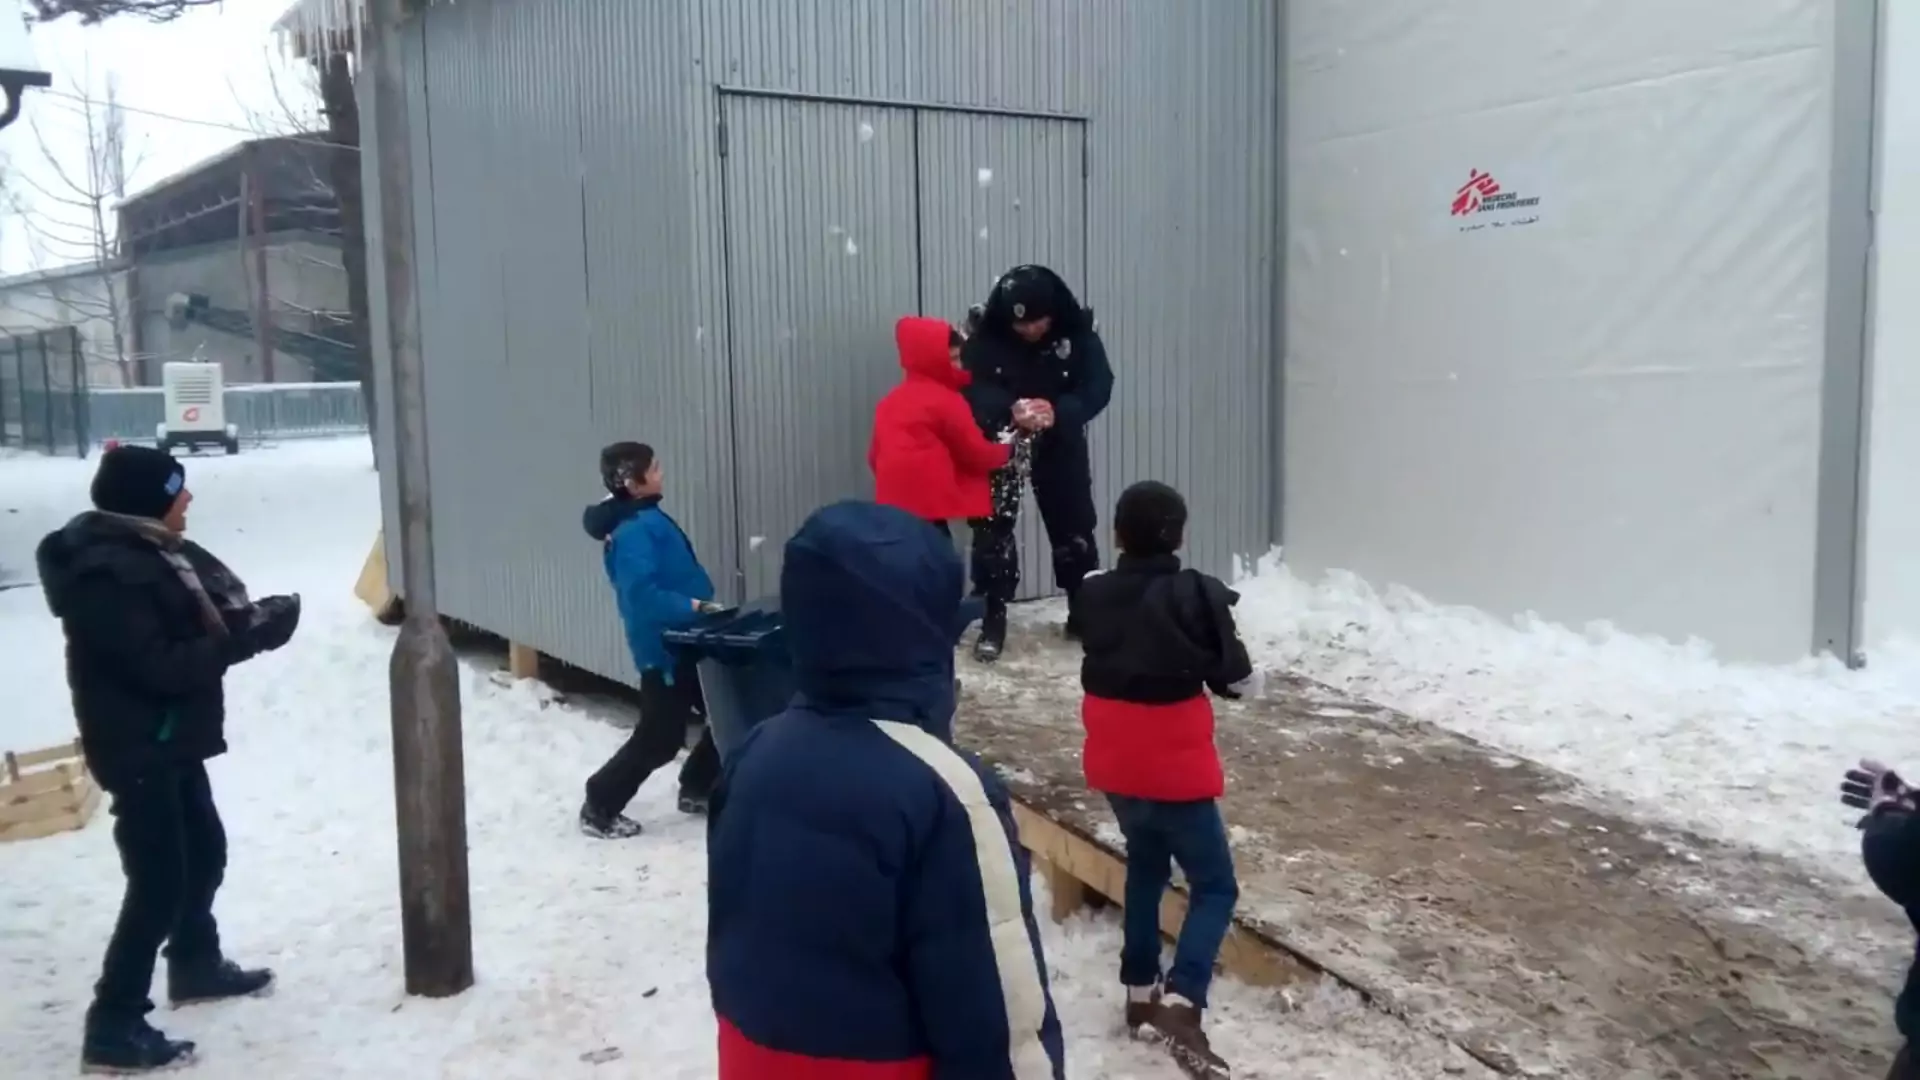 Serbska policja starła się z dziećmi syryjskich uchodźców... na śnieżki!